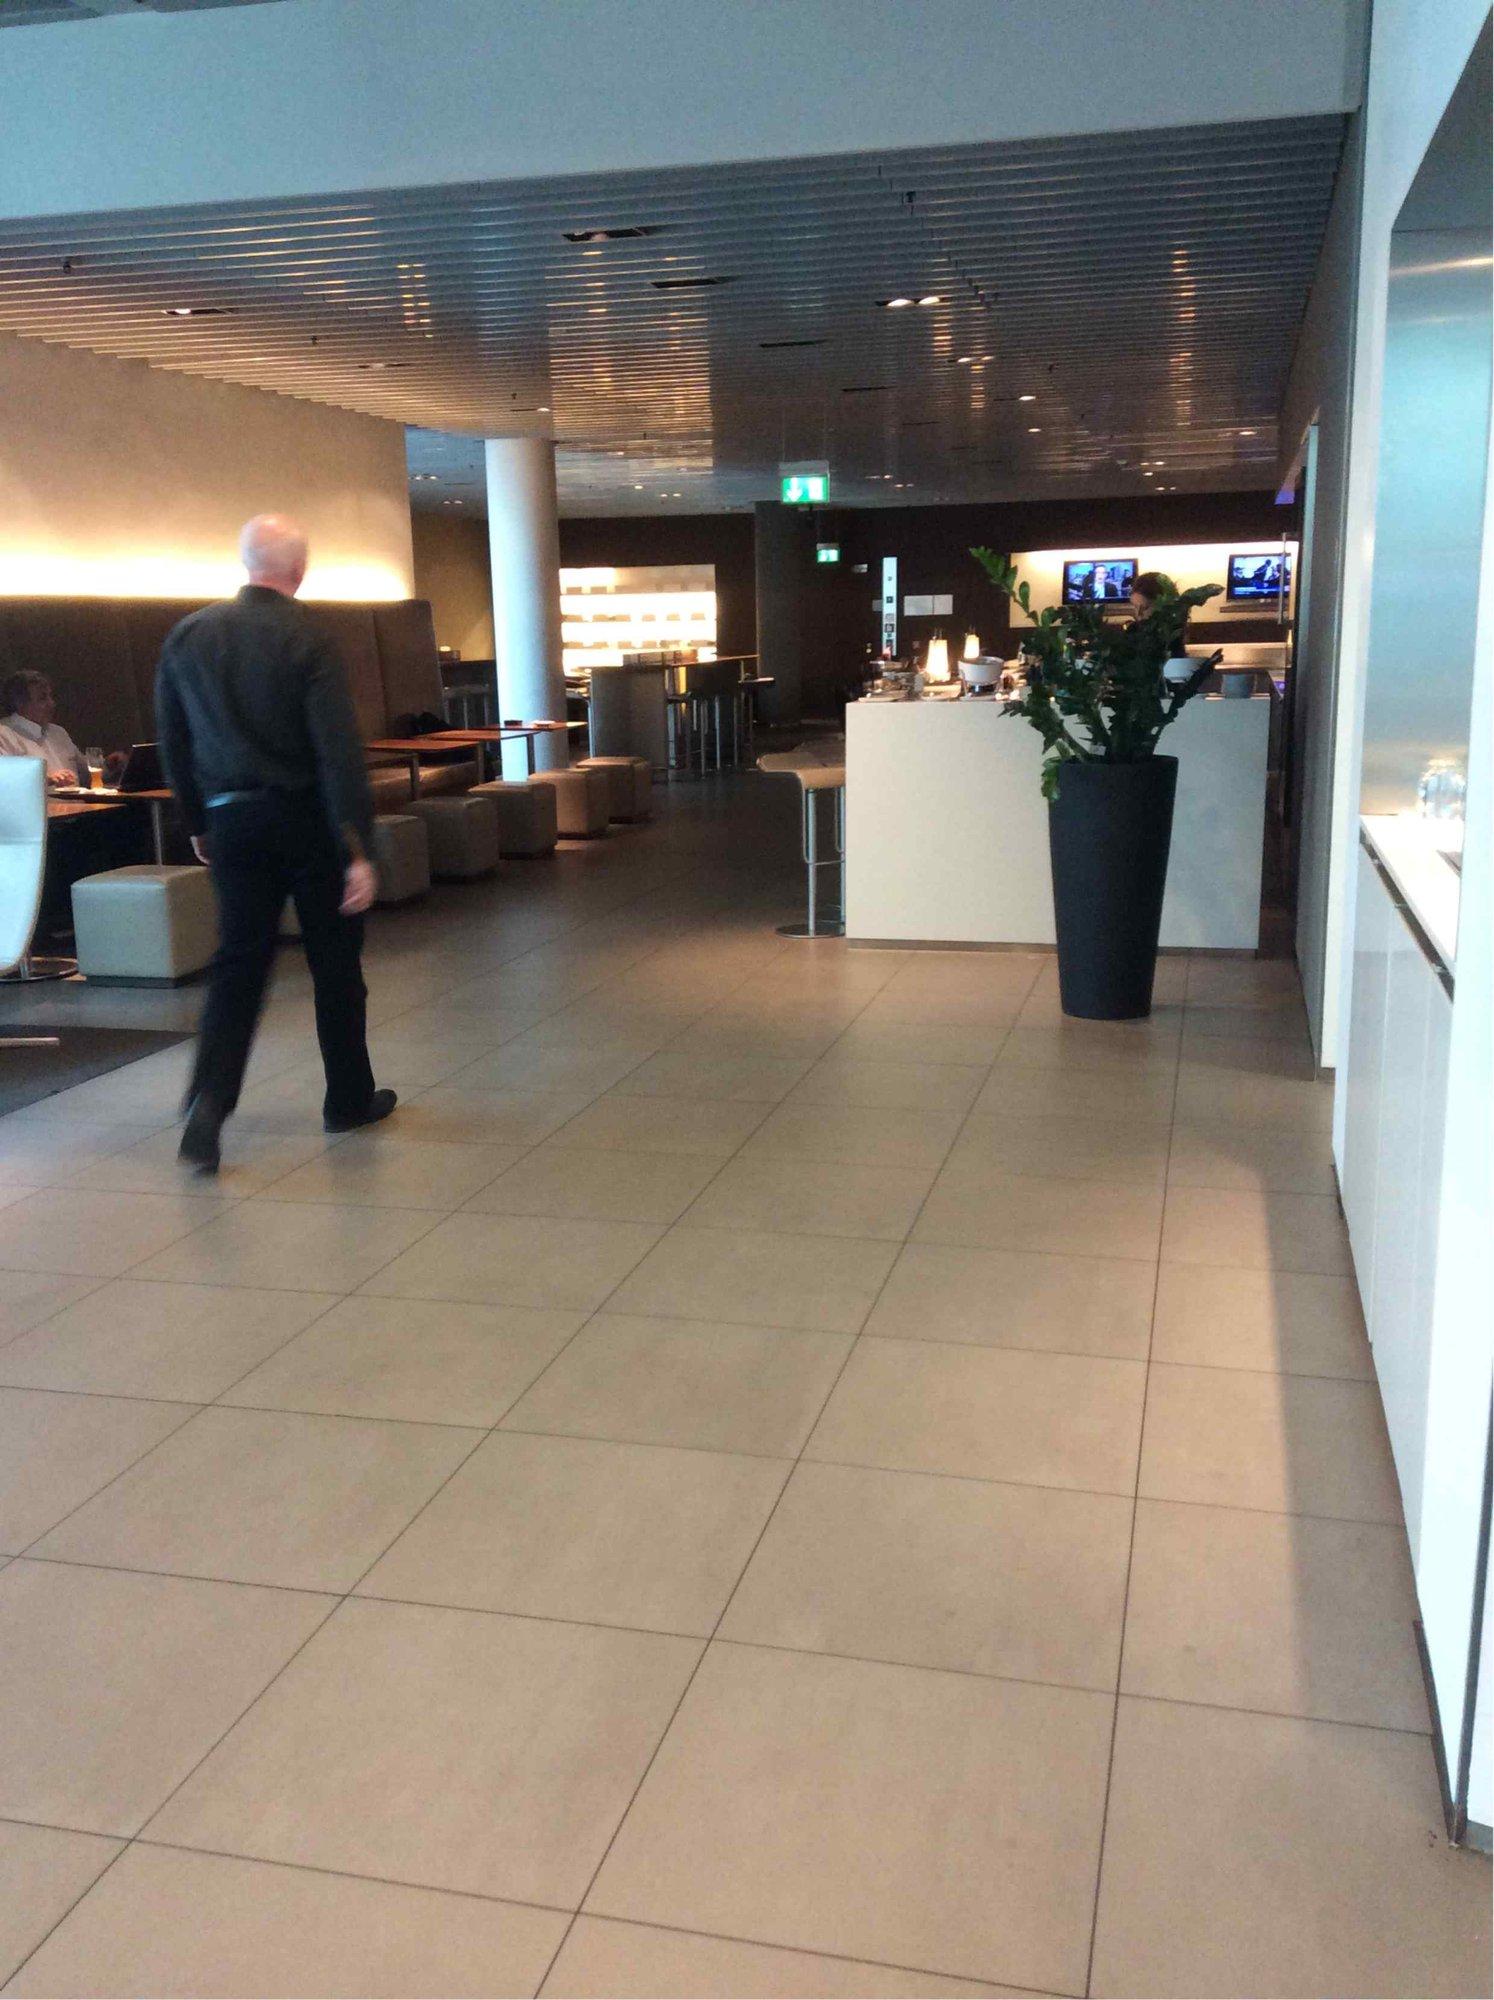 Lufthansa Senator Lounge (Non-Schengen) image 11 of 14